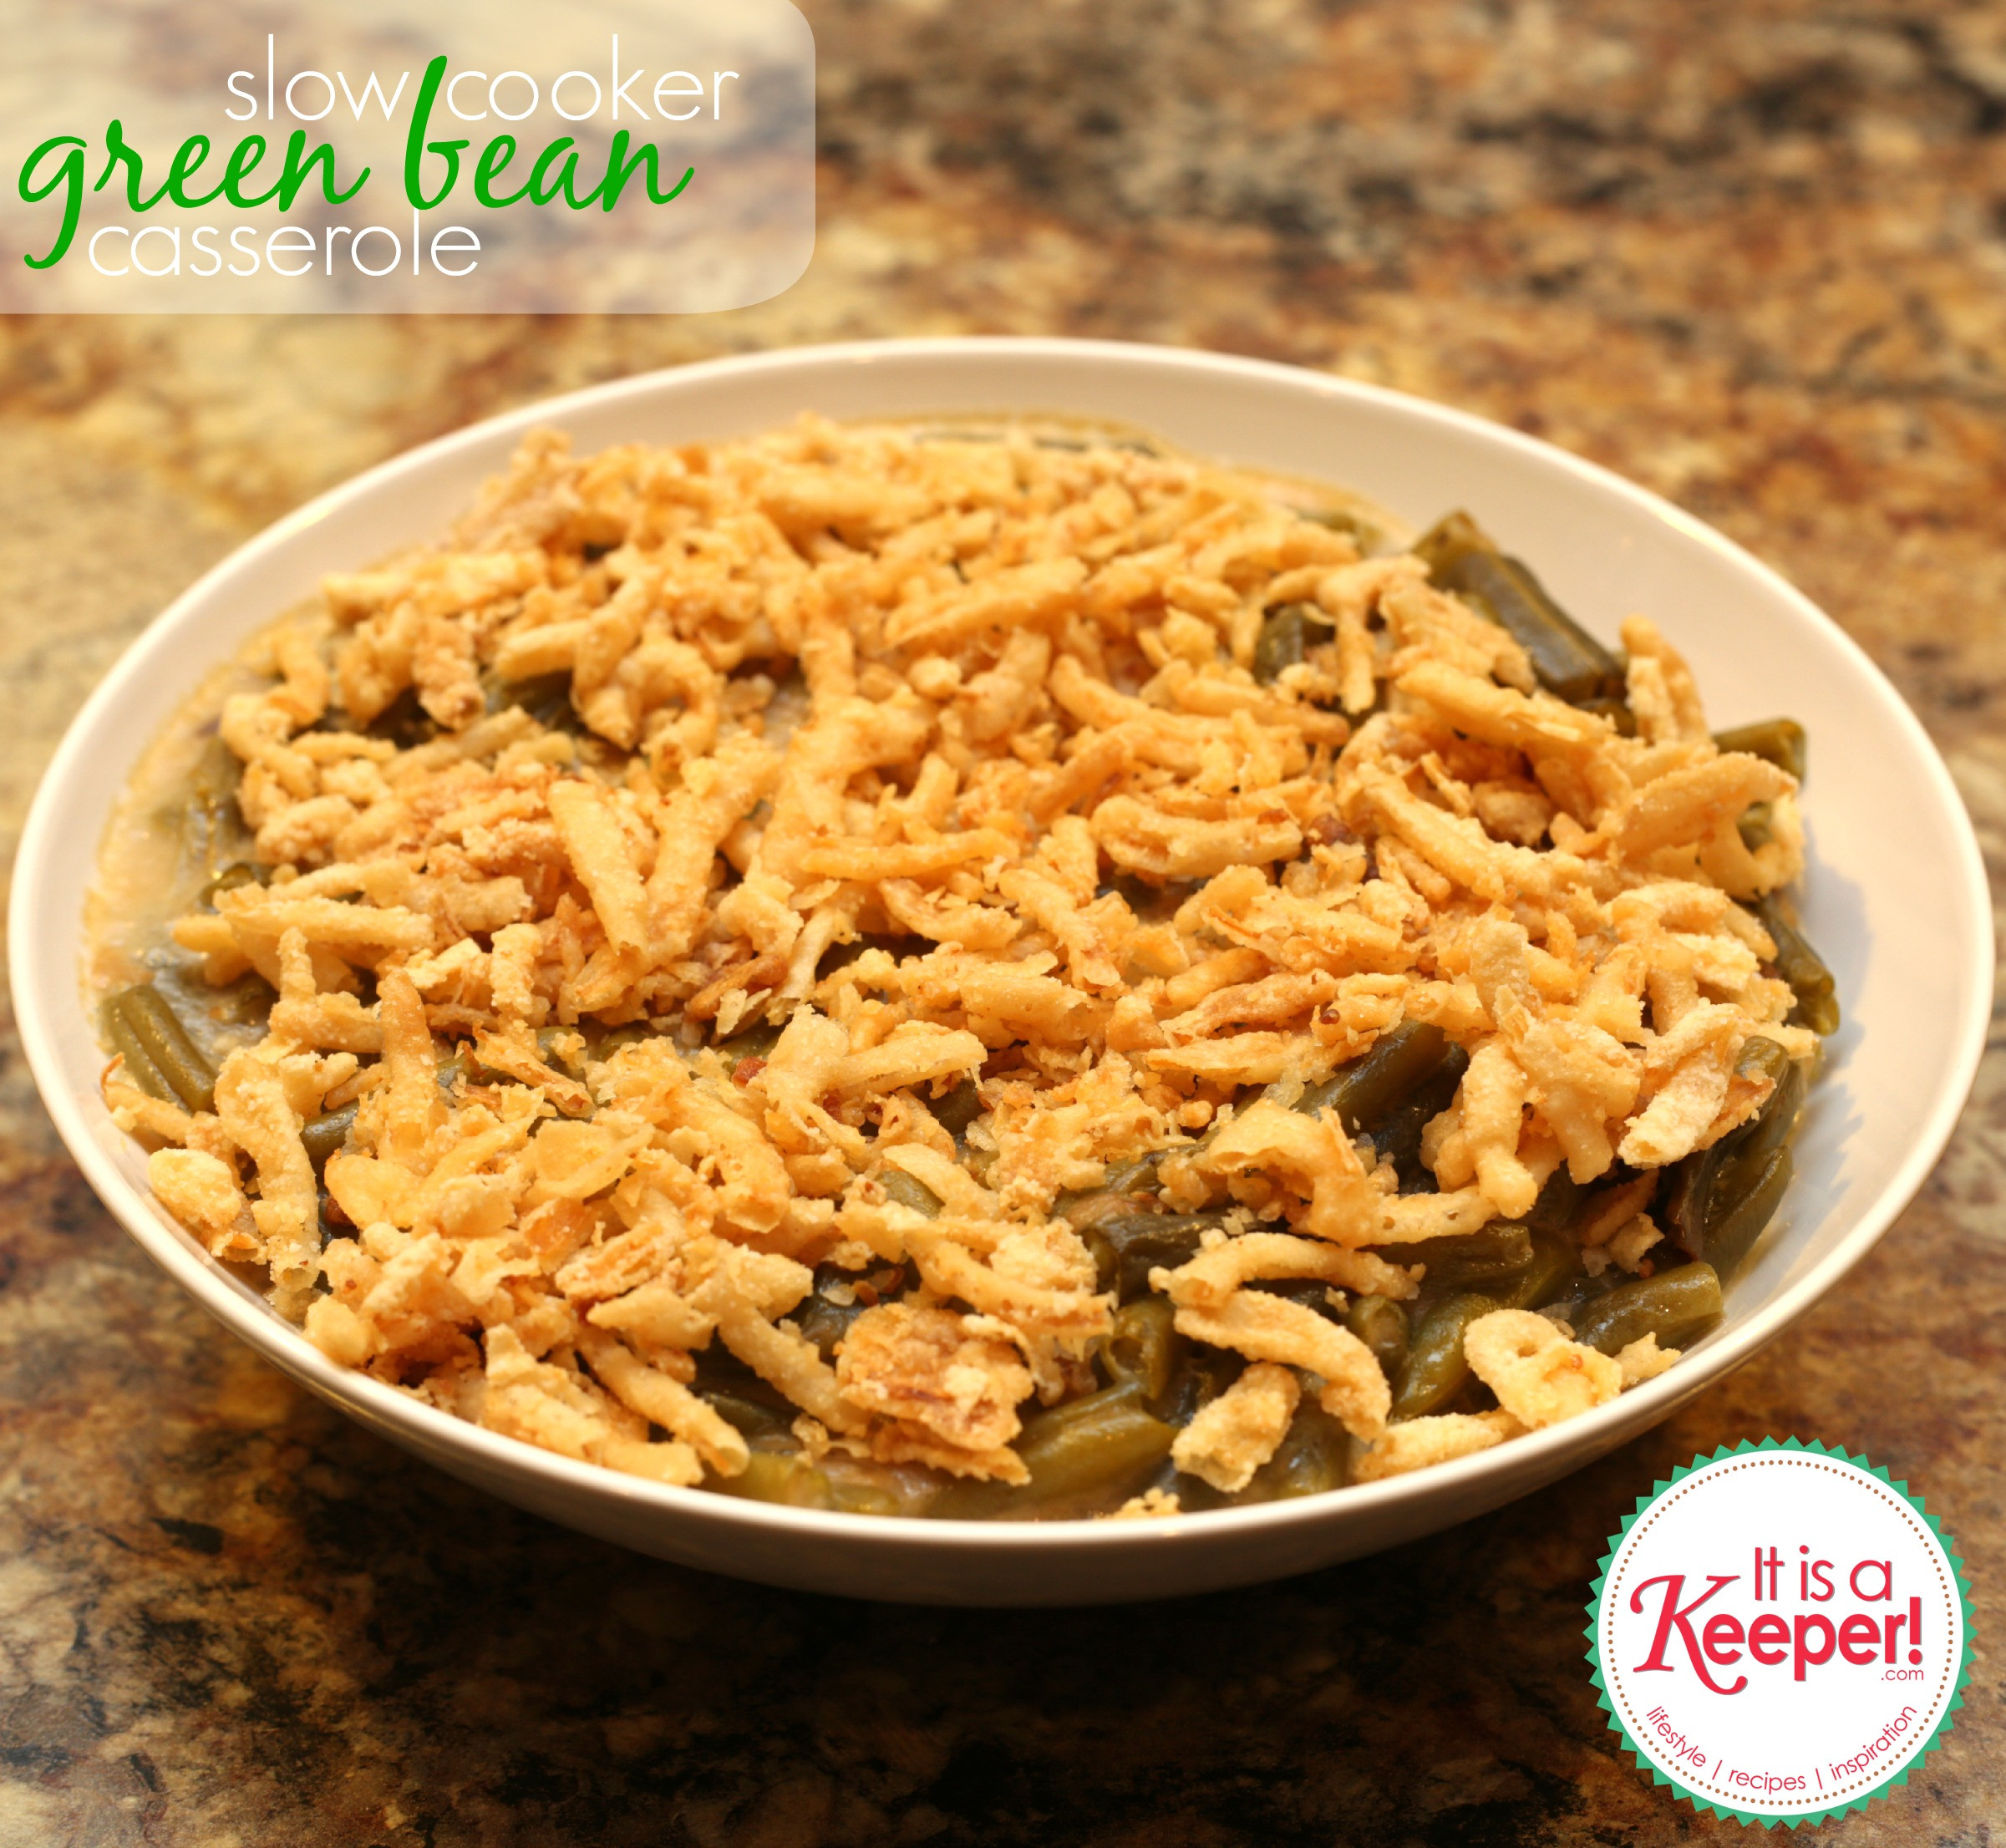 Crock Pot Green Bean Casserole
 Easy Crock Pot Recipes Green Bean Casserole It s a Keeper